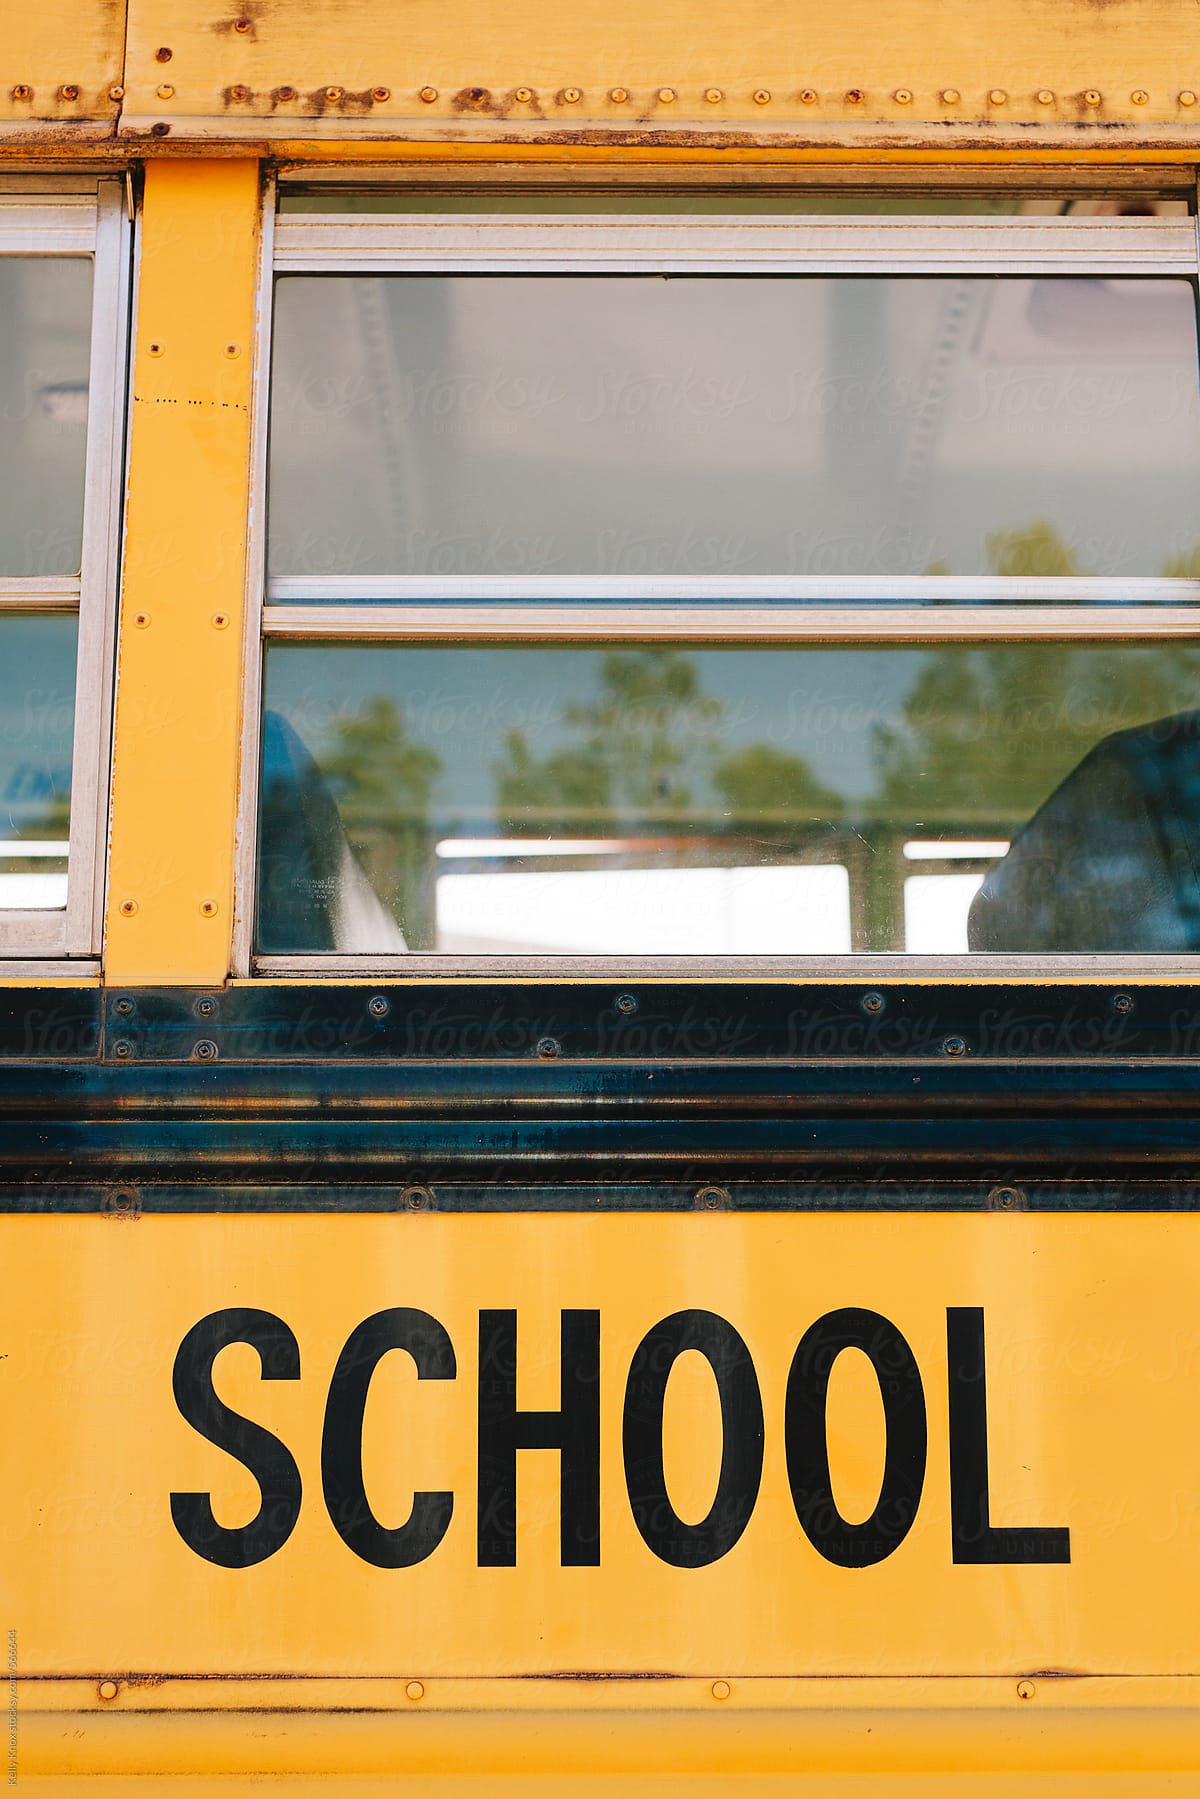 school bus detail